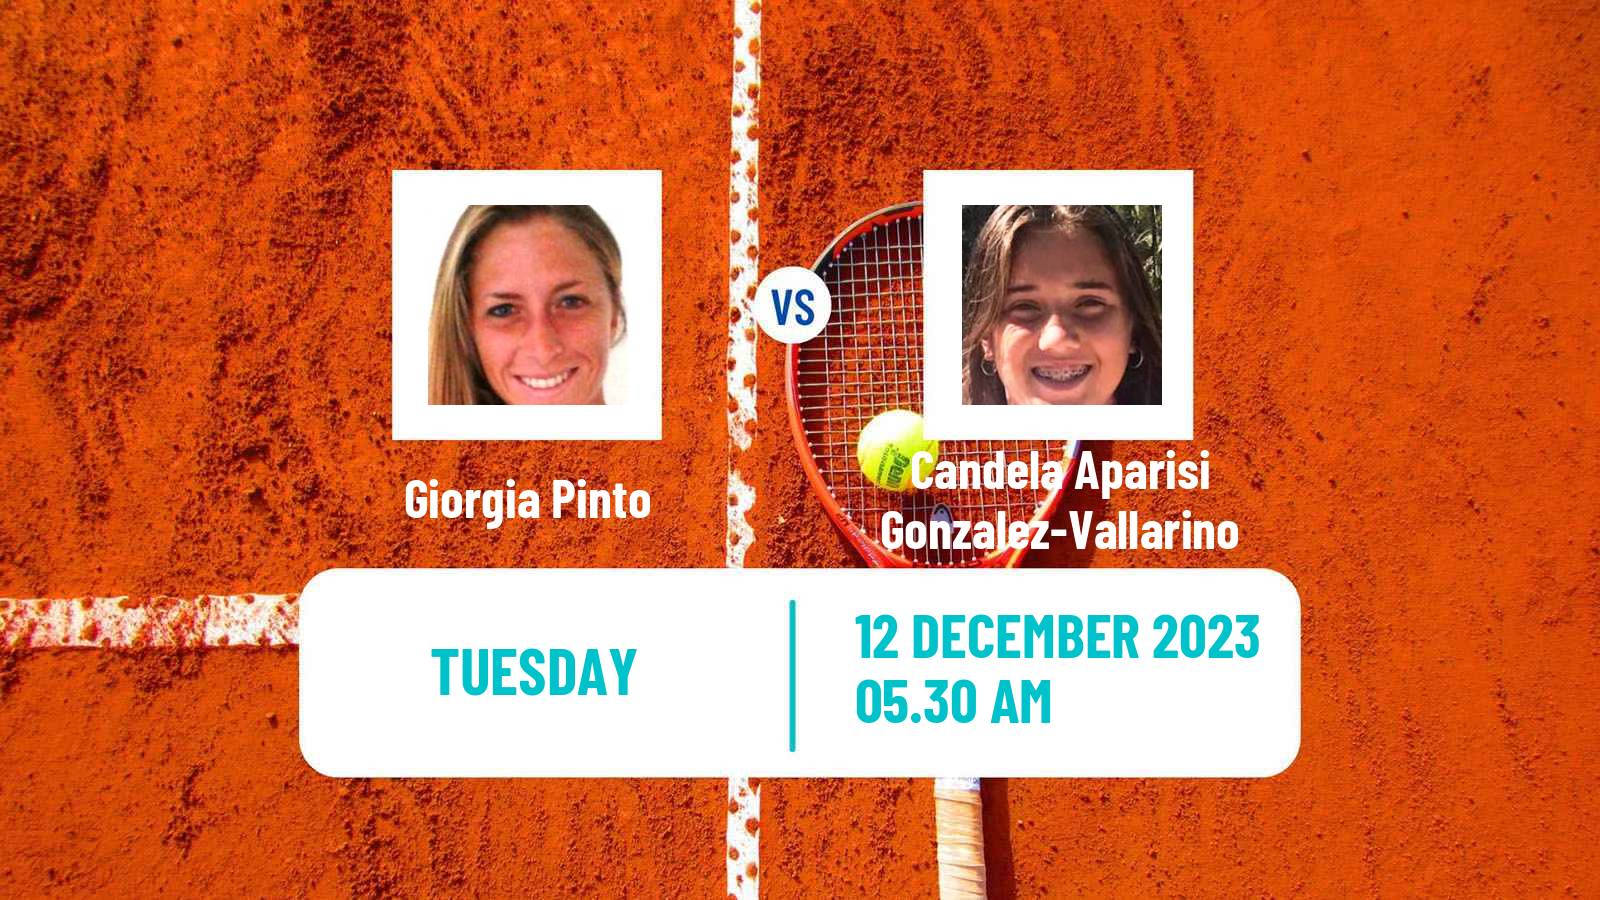 Tennis ITF W15 Melilla Women 2023 Giorgia Pinto - Candela Aparisi Gonzalez-Vallarino